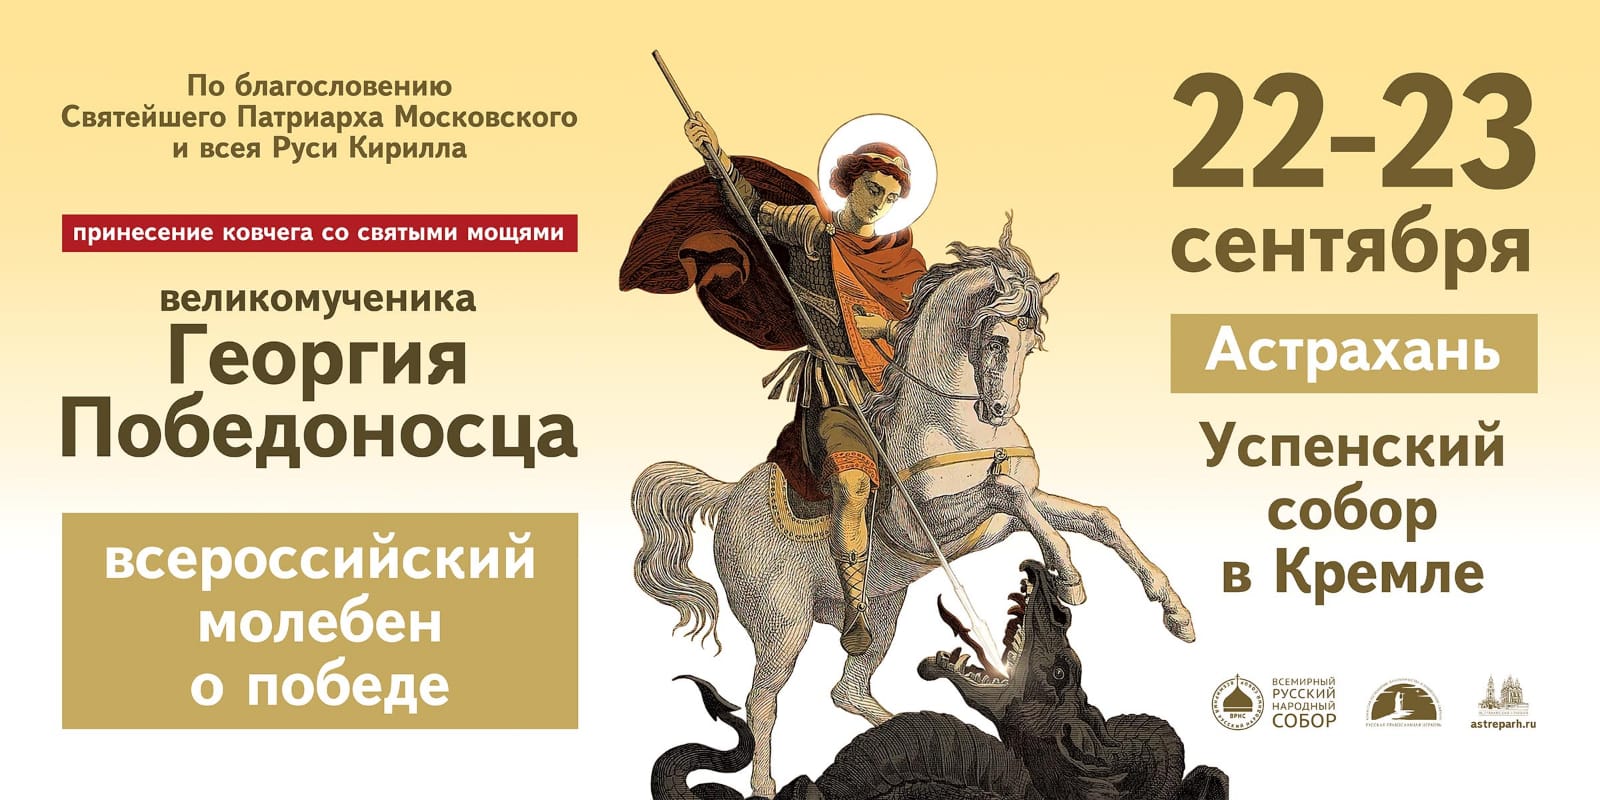 В Астрахань прибывает ковчег с мощами великомученика Георгия Победоносца